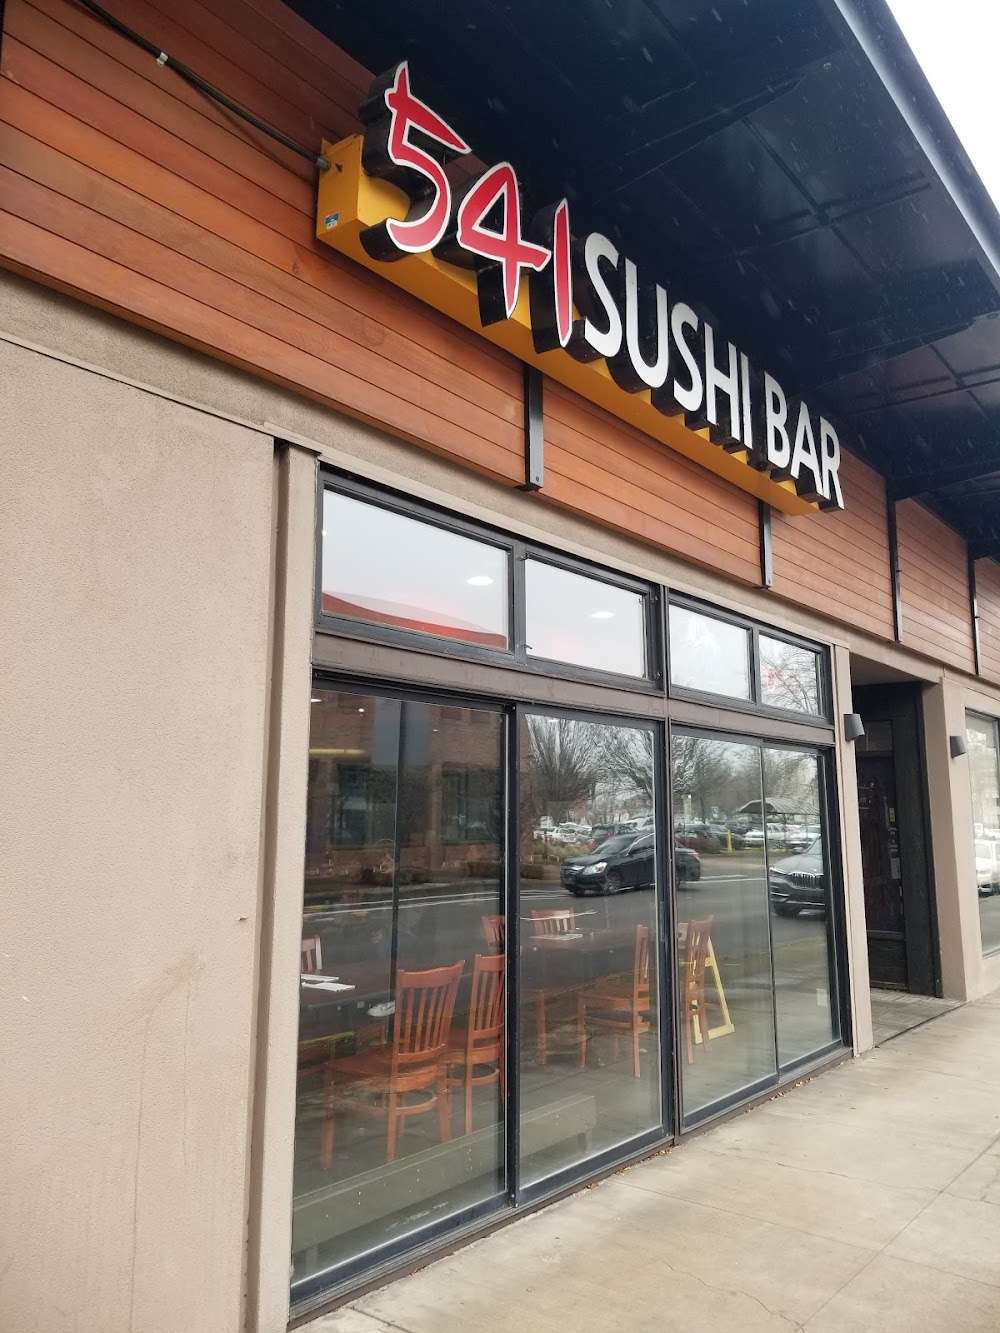 541 Sushi Bar